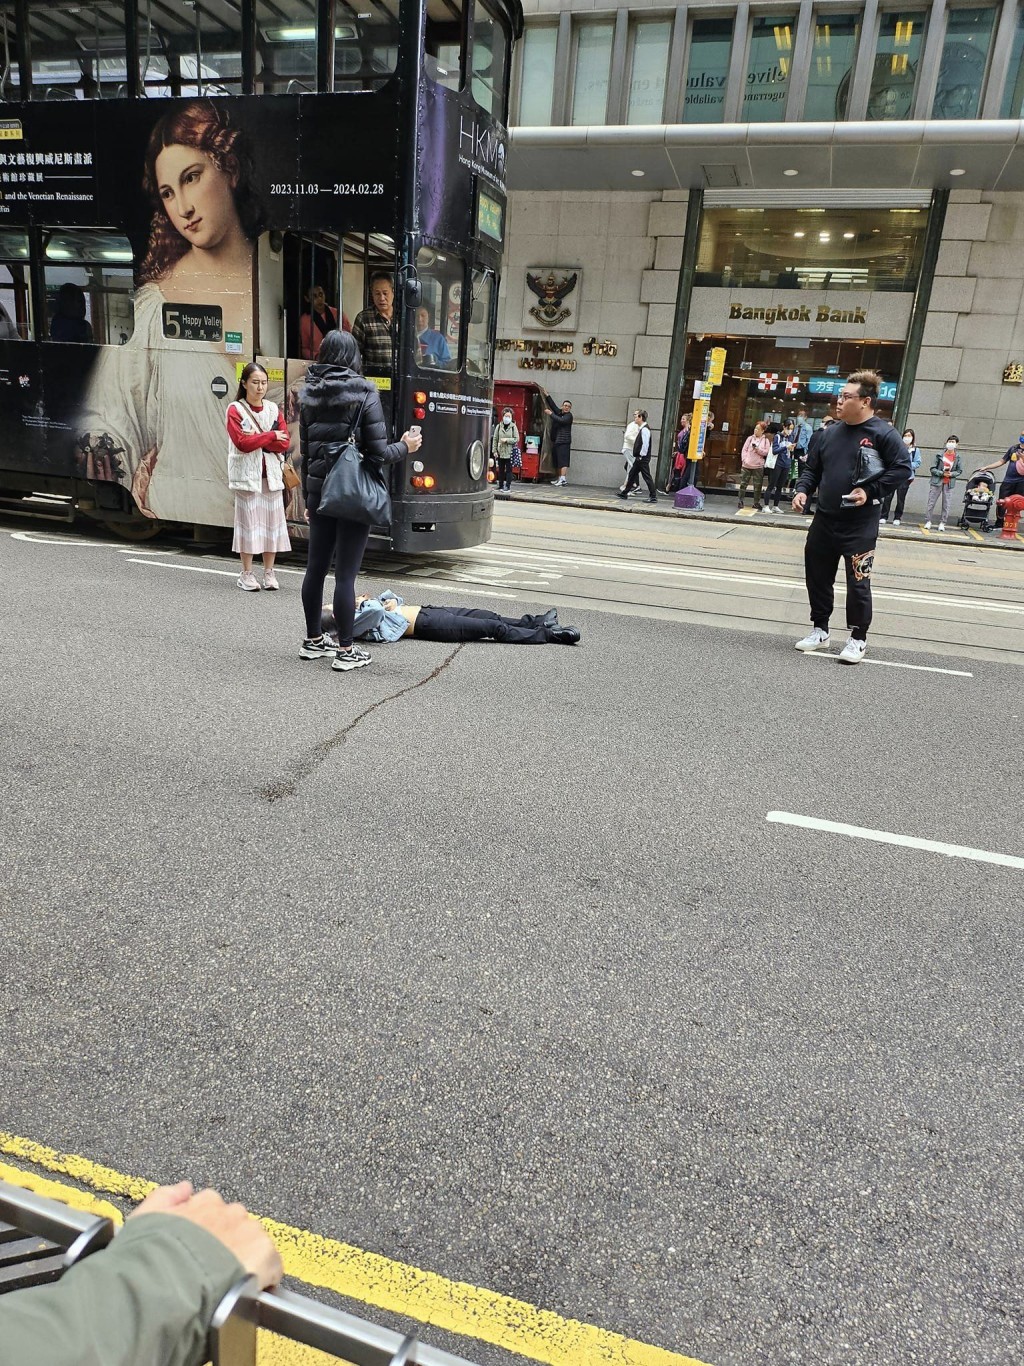 多名途人站在女子旁边，避免有驶经的车辆撞倒她。网上图片